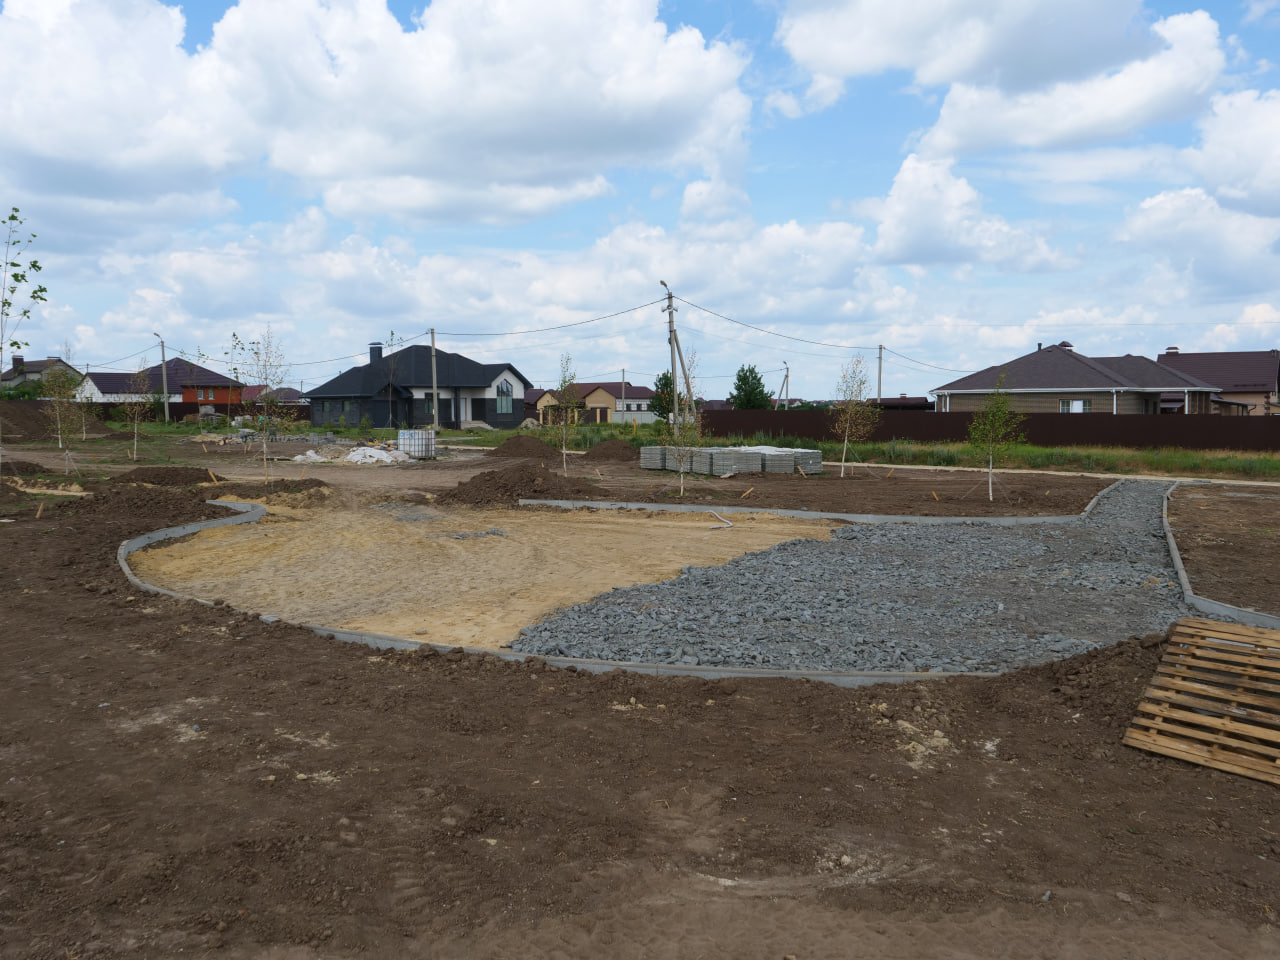 Строительство новой общественной территории началось в посёлке Северный.